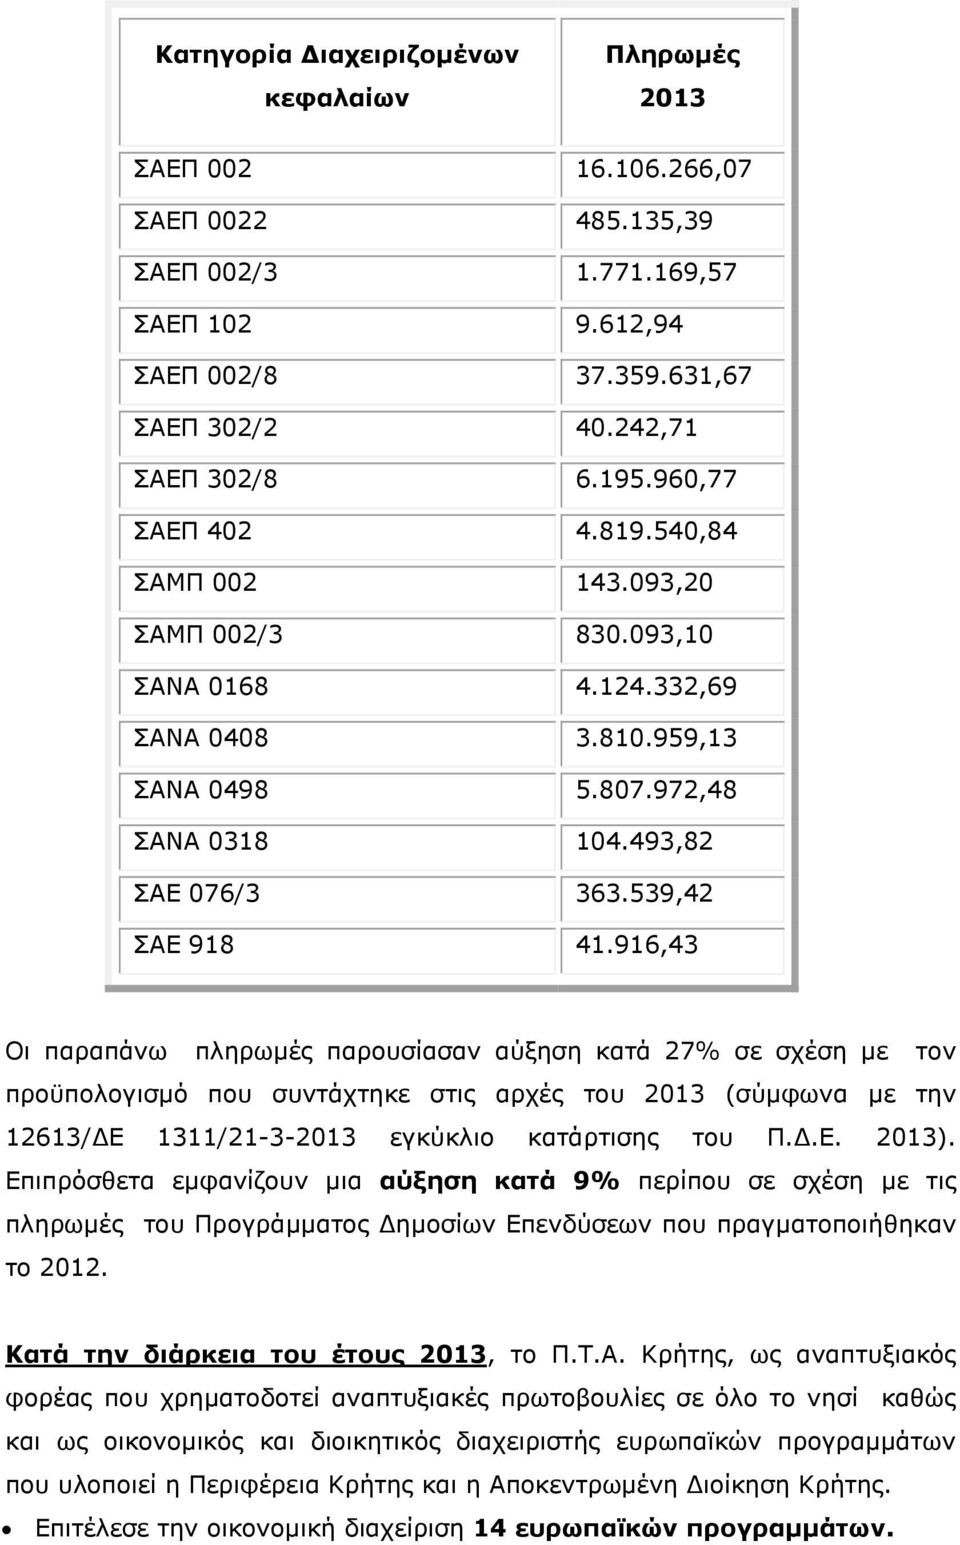 916,43 Οι παραπάνω πληρωµές παρουσίασαν αύξηση κατά 27% σε σχέση µε τον προϋπολογισµό που συντάχτηκε στις αρχές του 2013 (σύµφωνα µε την 12613/ Ε 1311/21-3-2013 εγκύκλιο κατάρτισης του Π..Ε. 2013).